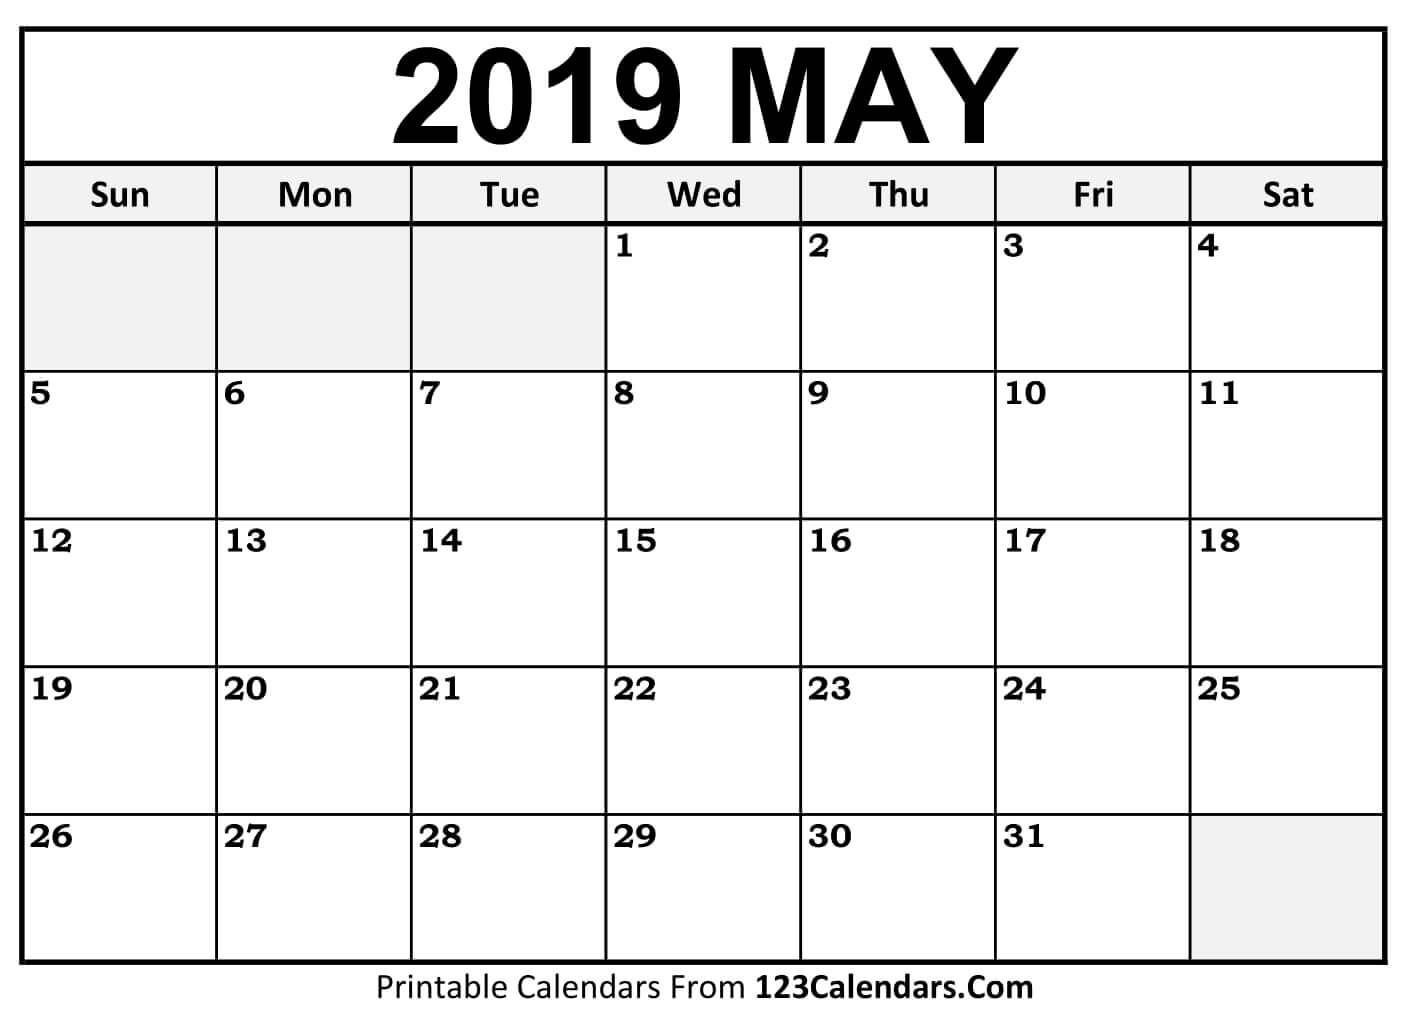 Calendar 2019 May may may2019 may2019calendar floral